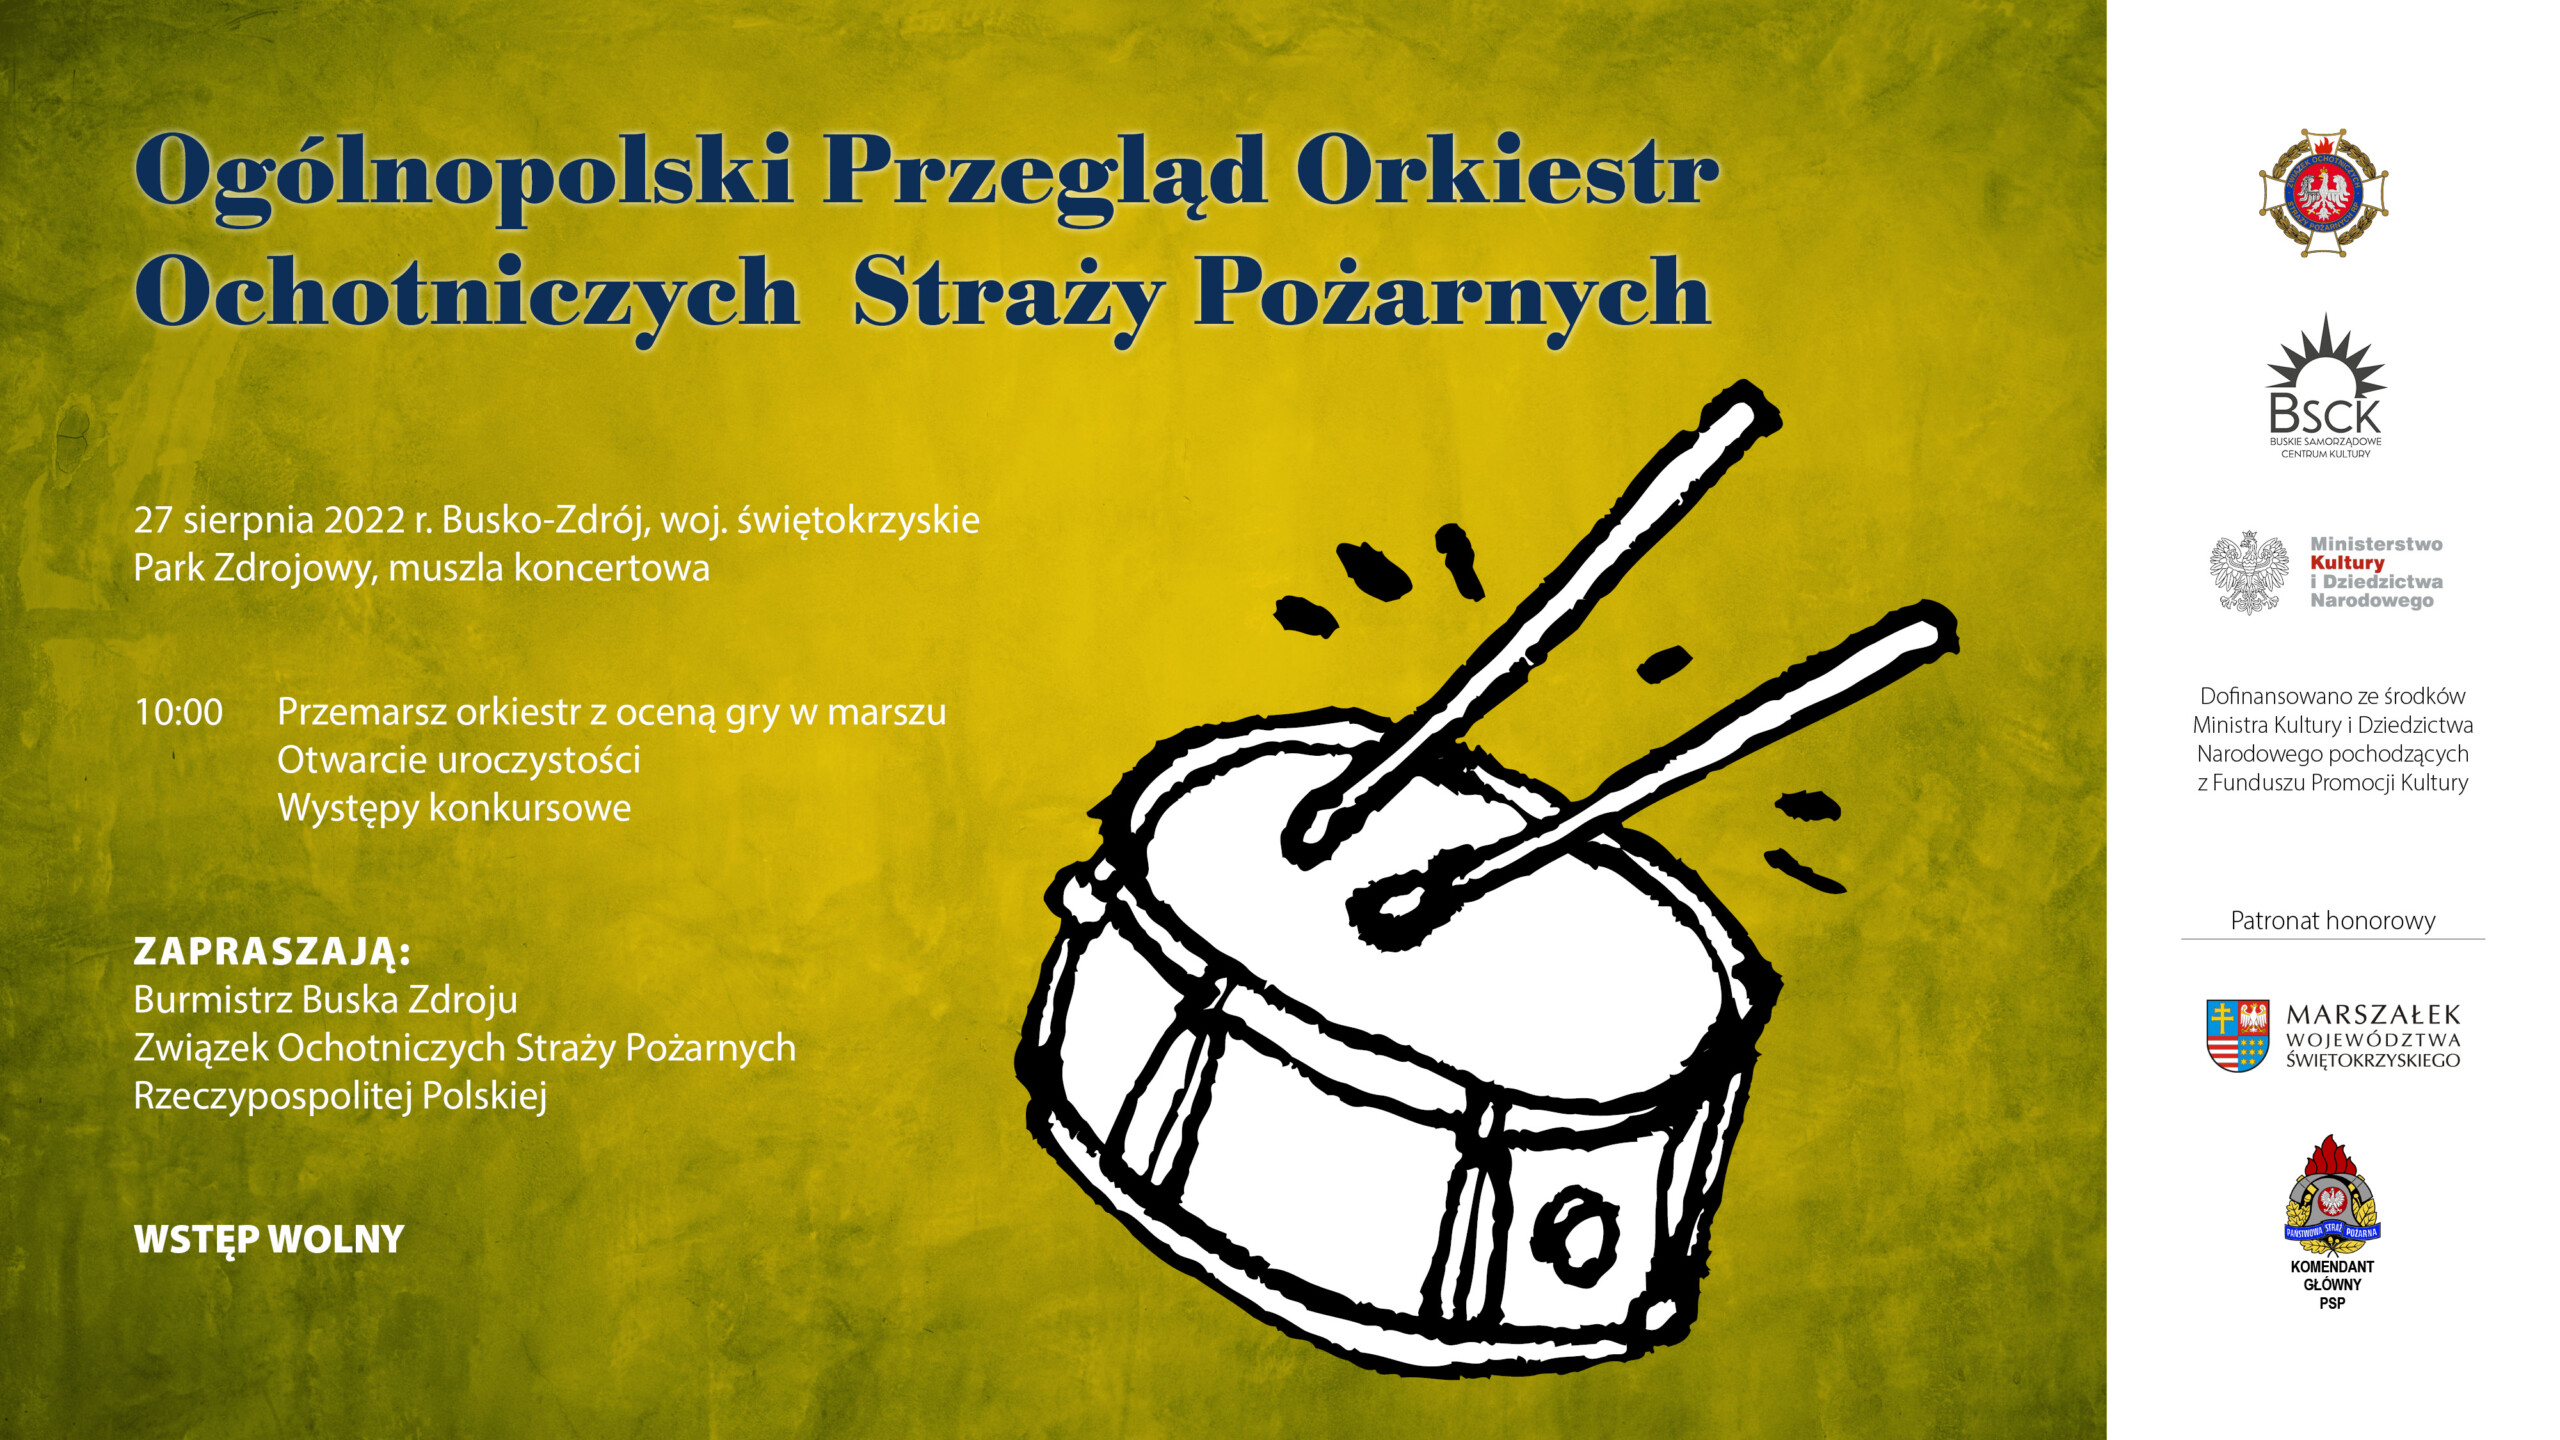 plakat promujacy przeglad orkiestr 2022 w Busku Zdroju 